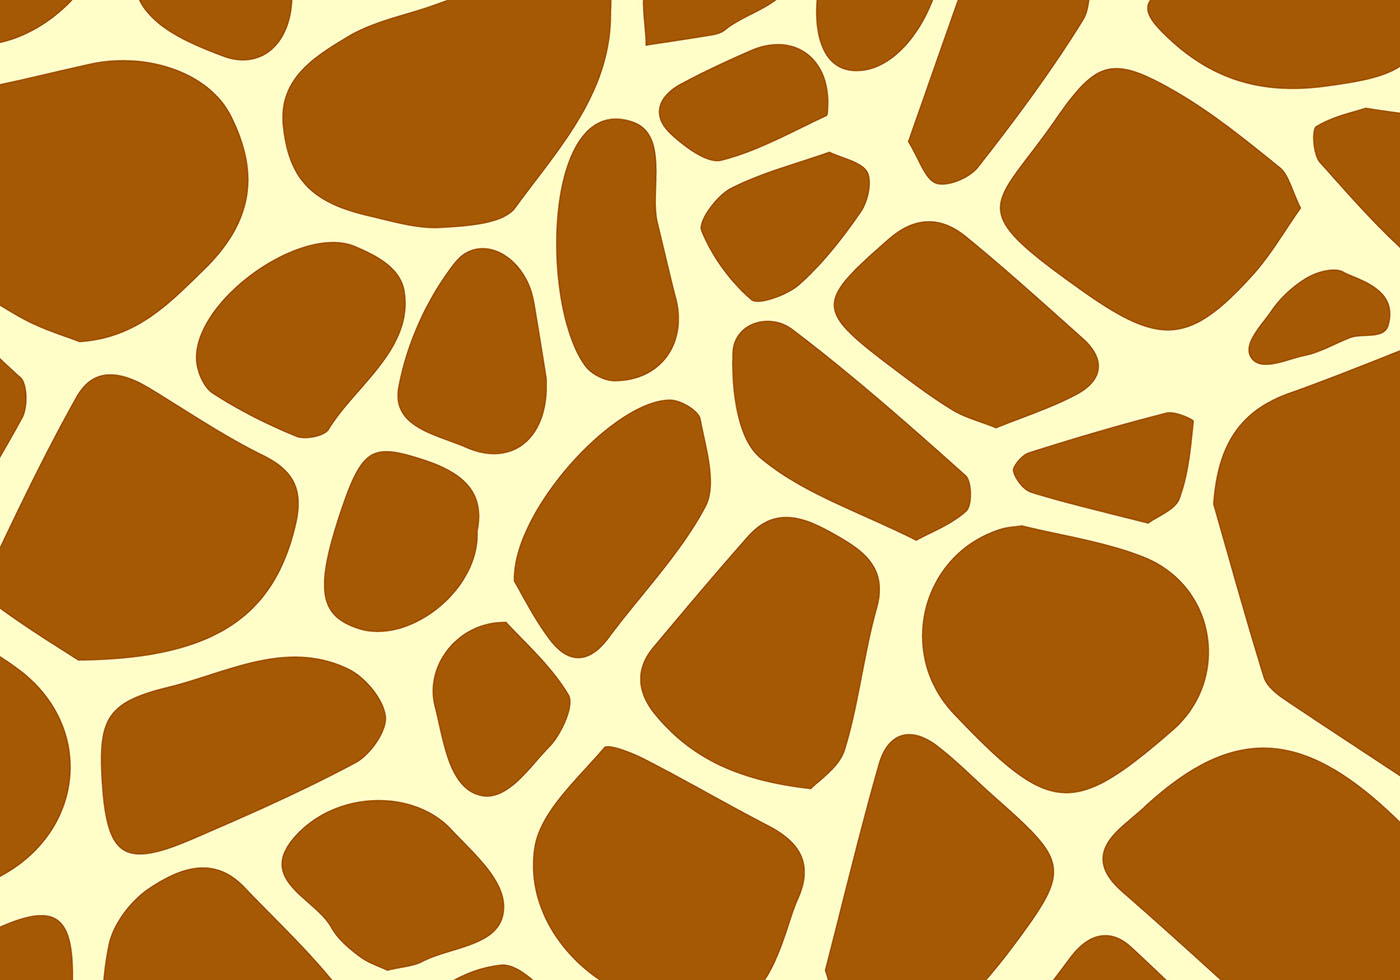 clipart giraffe texture